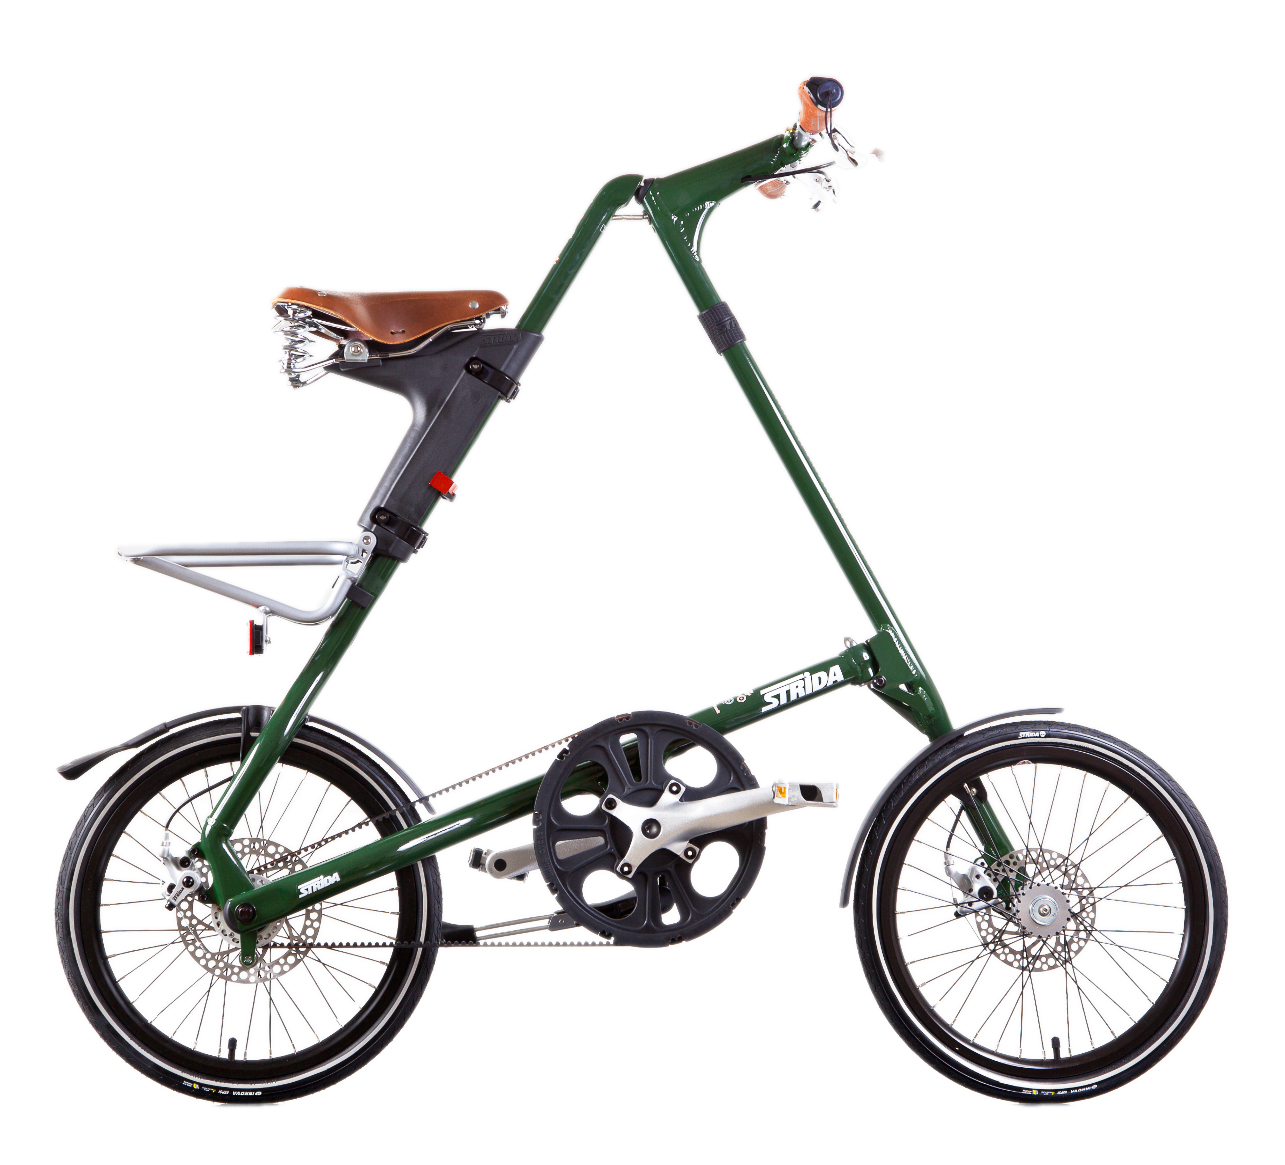 STRIDA SX Racing Green - 18 pouces - à vendre - acheter - Acheter des vélos pliables - Acheter des vélos pliants - Acheter un vélo pliable - Acheter un vélo pliant - forme triangulaire - Léger - Magasin - Magasin de vélo pliant - nouveau - strida - sx - triangulaire - vélo - vélo compact - Vélo design - vélo pliable - vélo pliant - Vélo pliant design - vélo pliant design strida - Vélo pliant triangulaire - vélo pliant unique - Vélos pliable - Vélos pliants - Vitesse unique